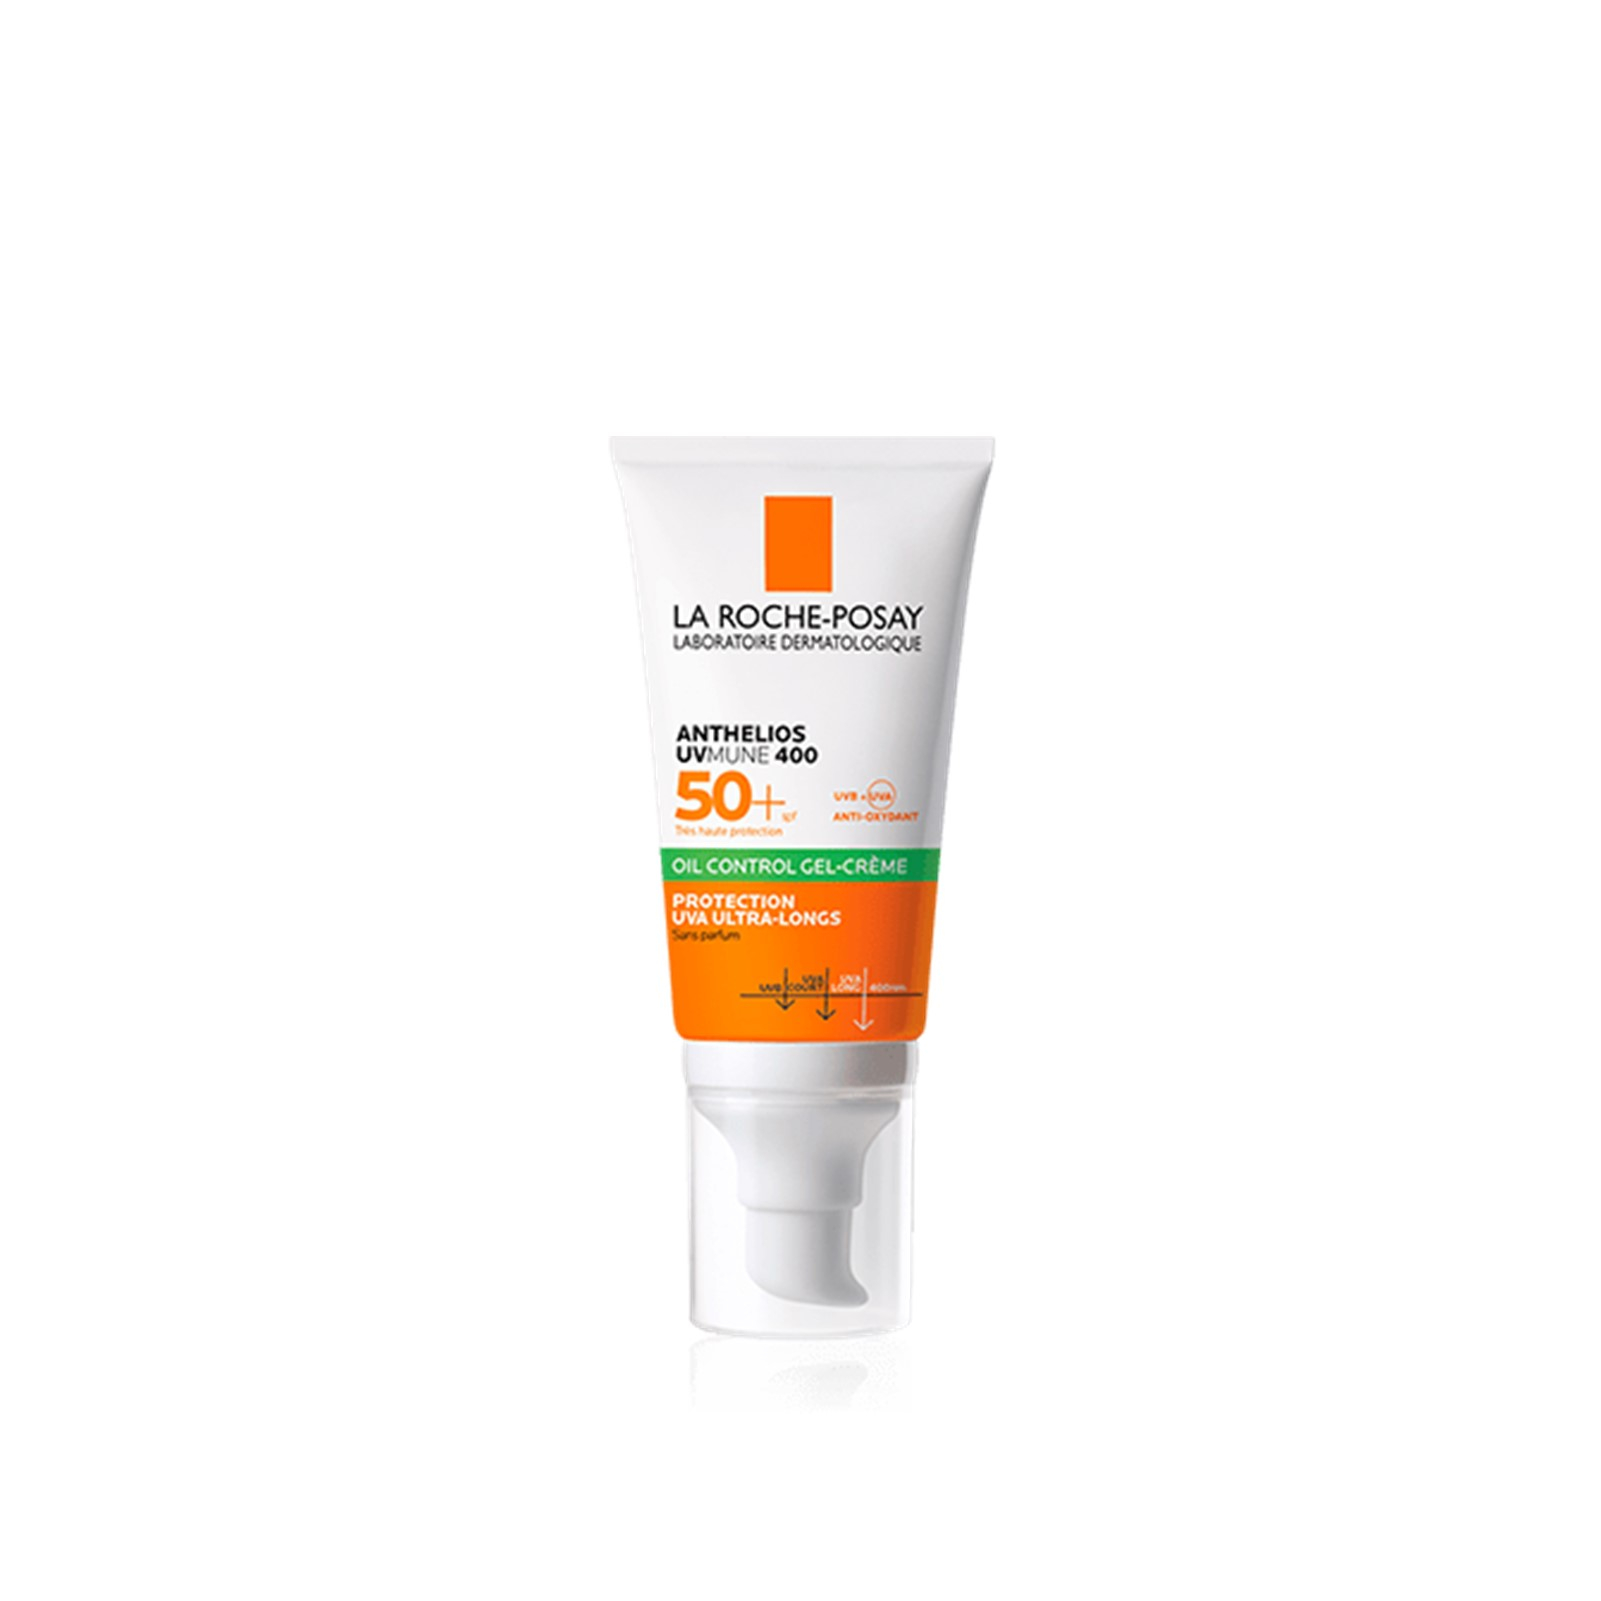 La Roche-Posay Anthelios Sunscreen Cream